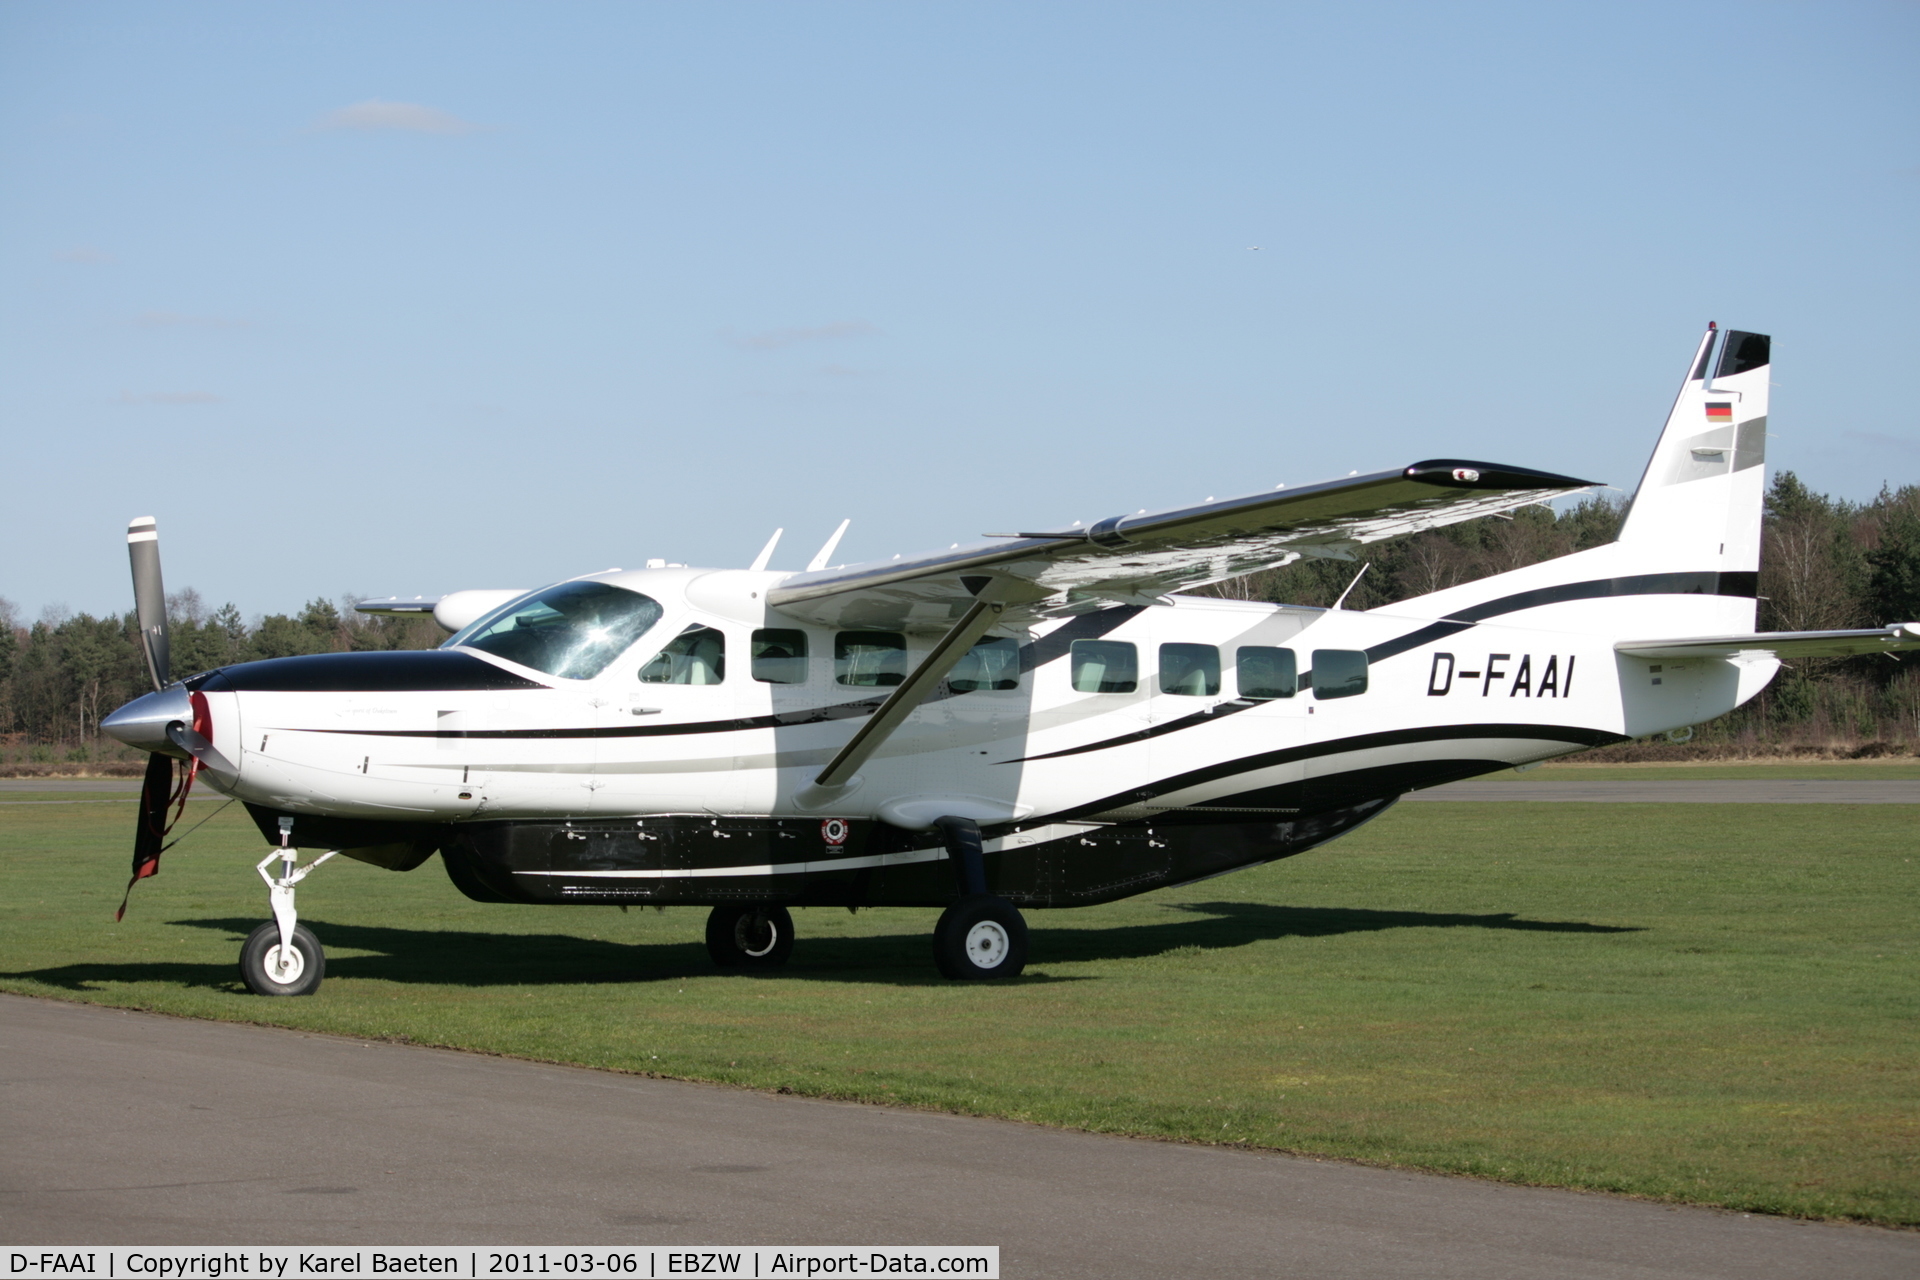 D-FAAI, 2008 Cessna 208B Grand Caravan C/N 208B2039, Air Alliance plane on maintenance @EBZW